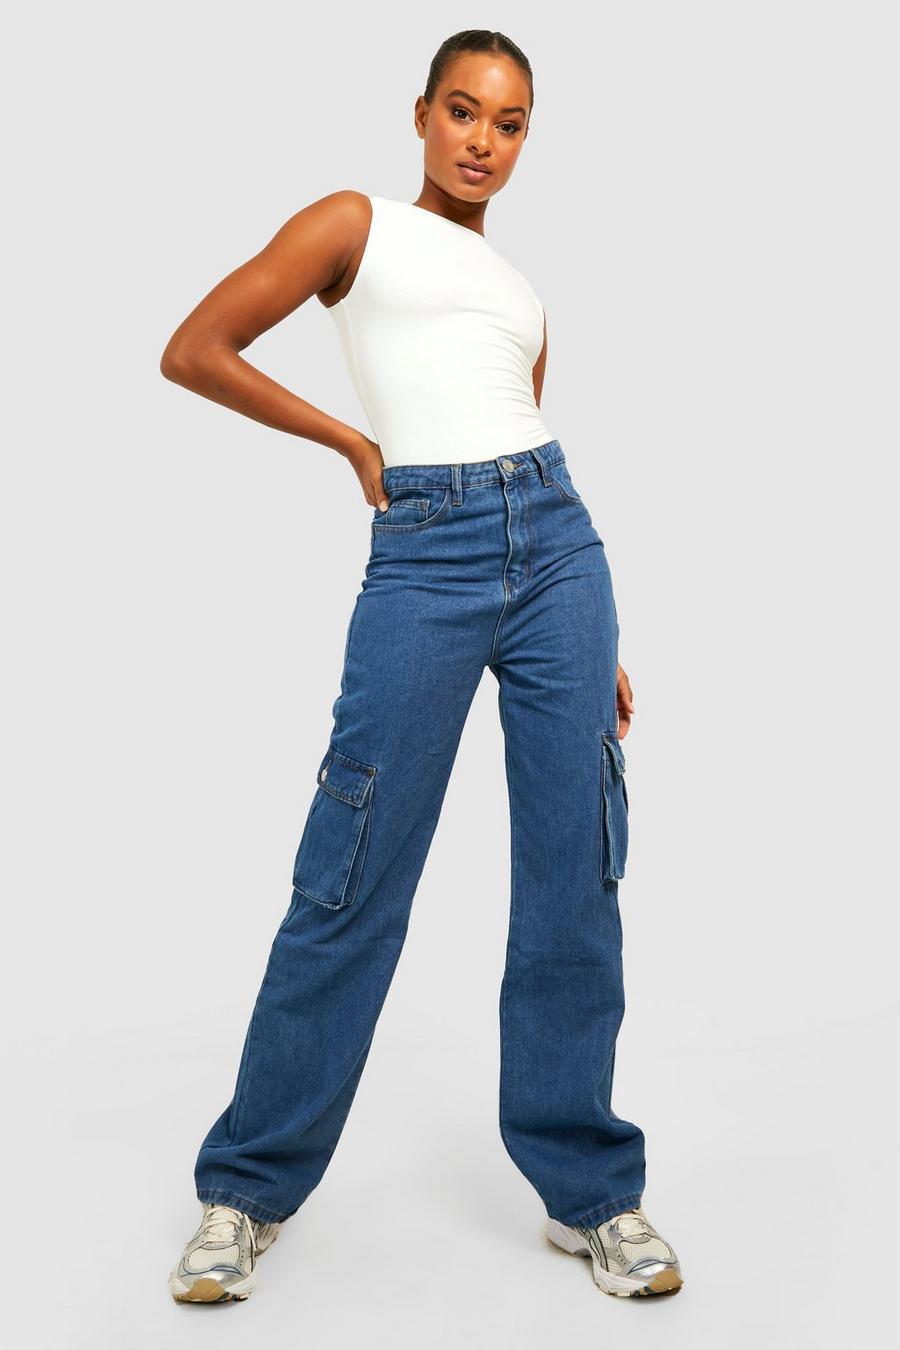 שפשוף בינוני azul ג'ינס דגמ'ח בגזרת רגל ישרה ובגזרת מותניים גבוהה, לנשים גבוהות